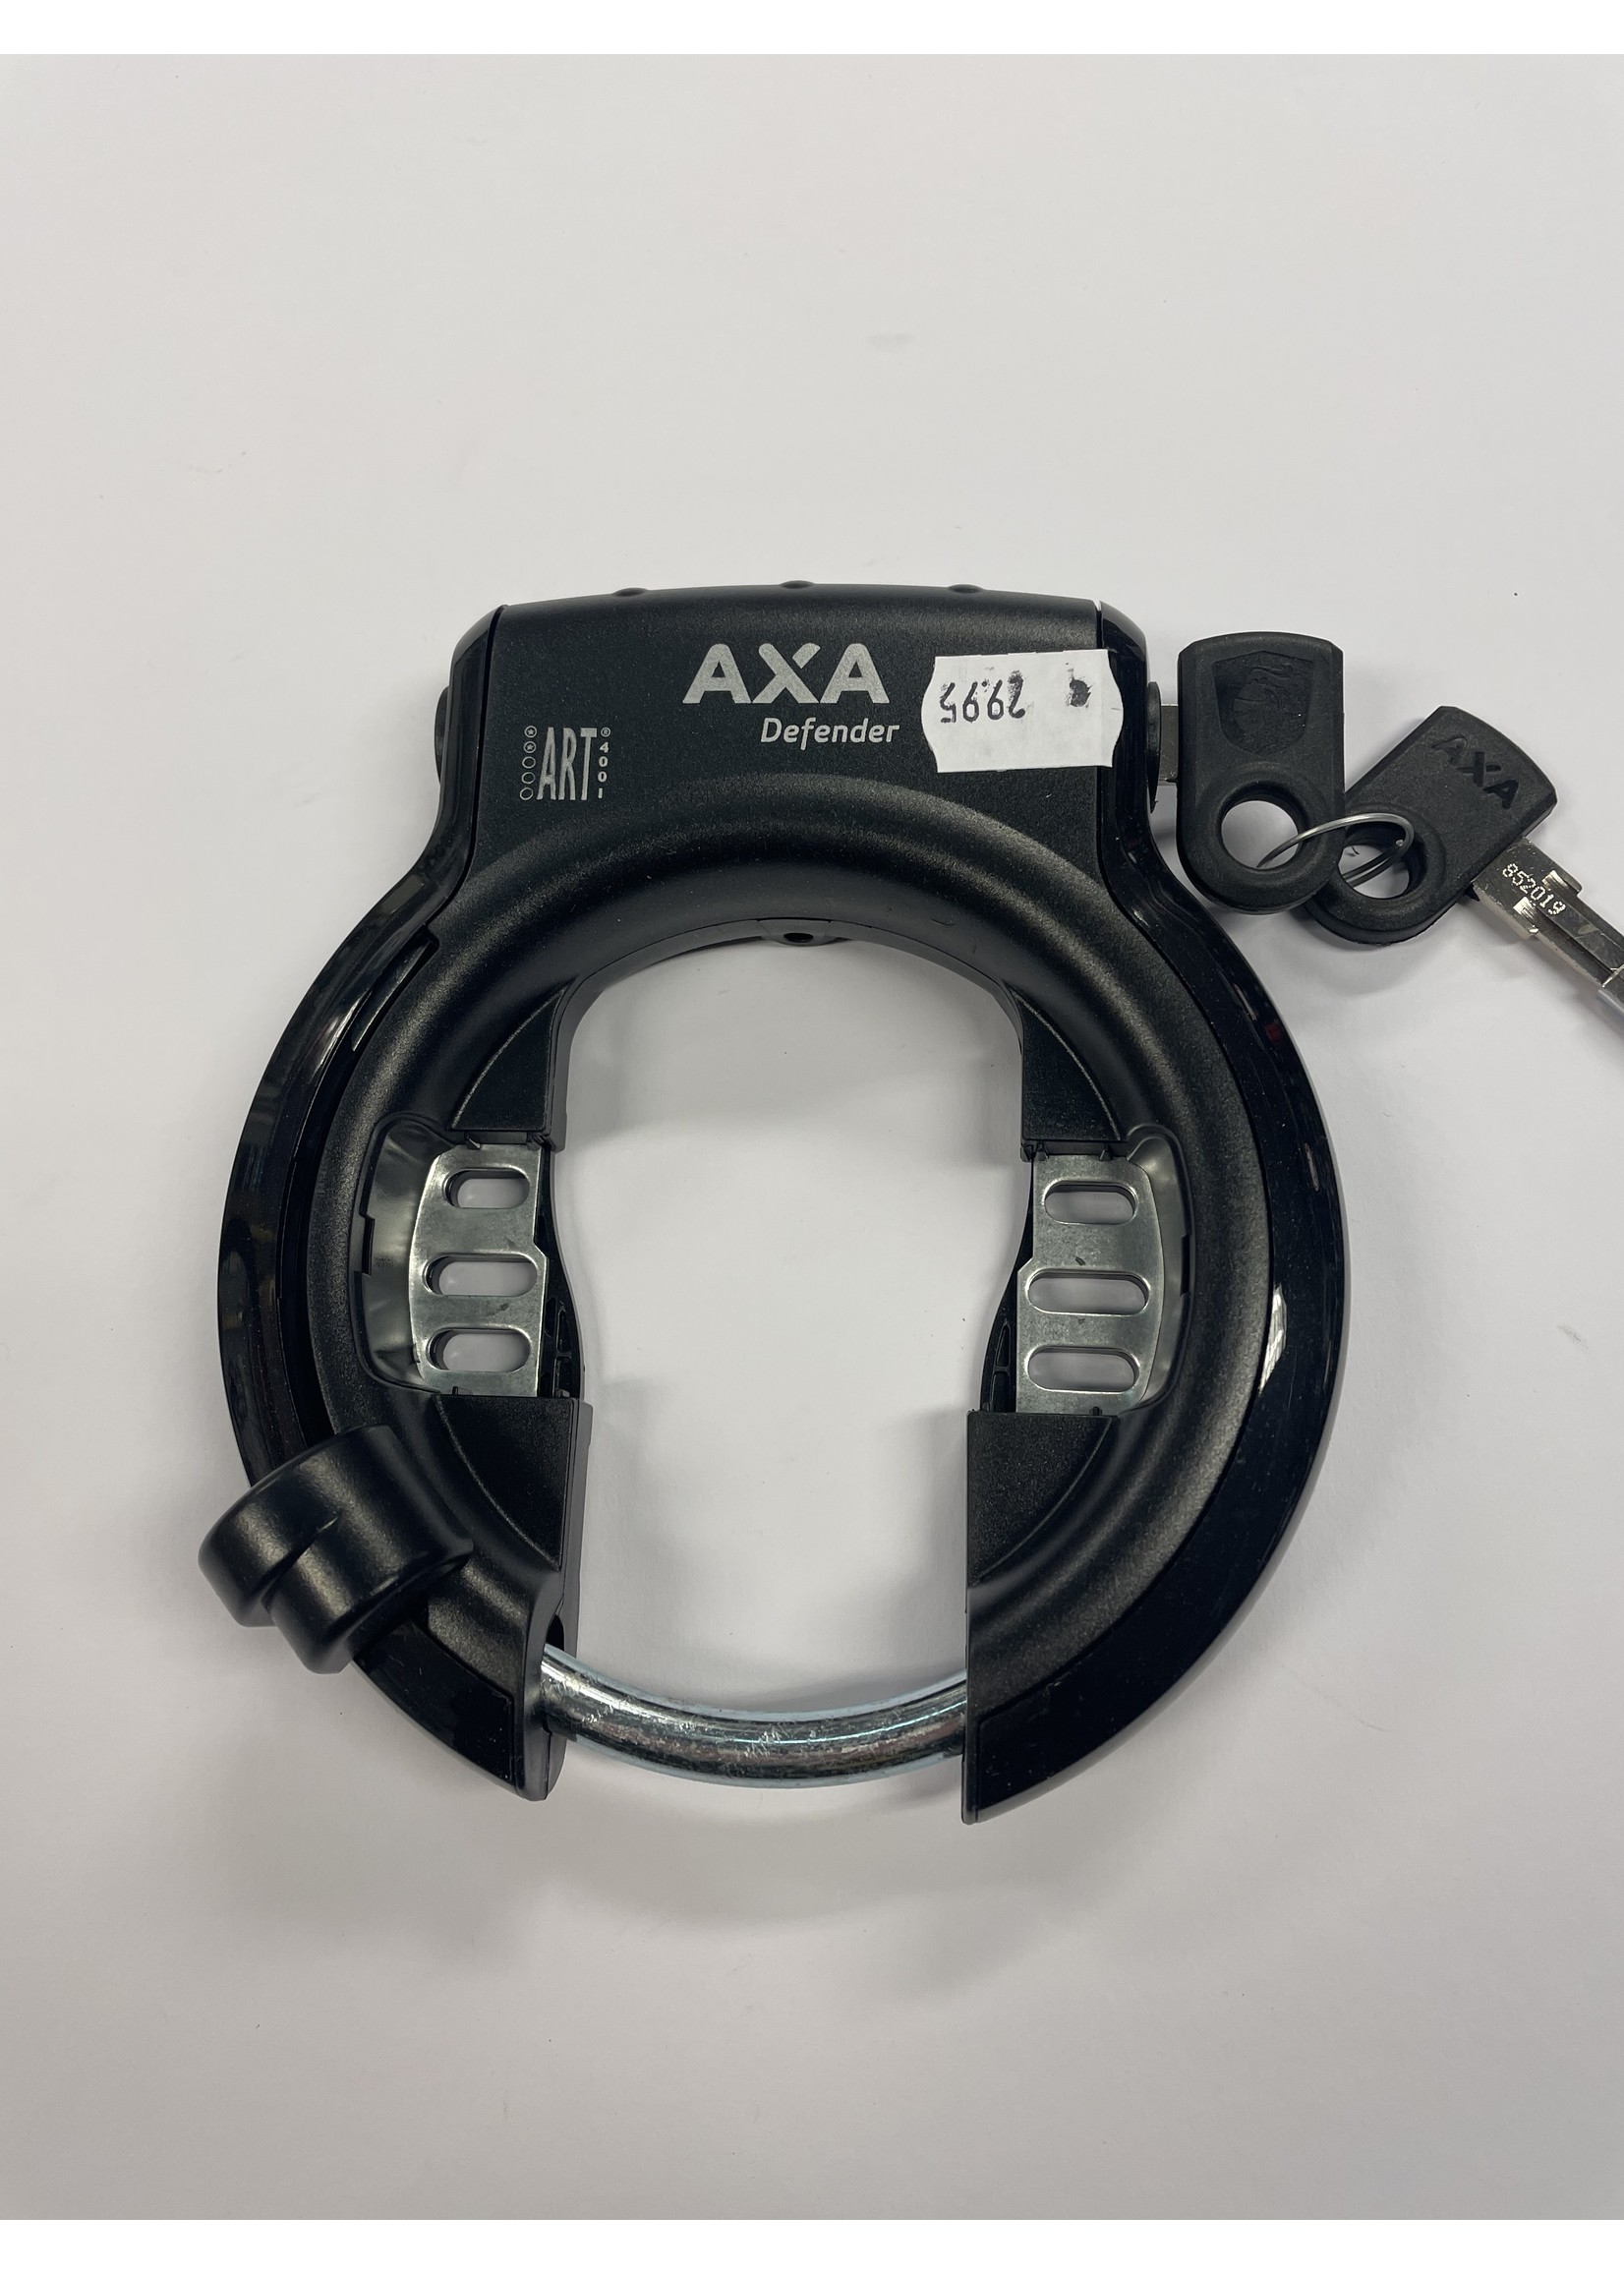 AXA Defender slot